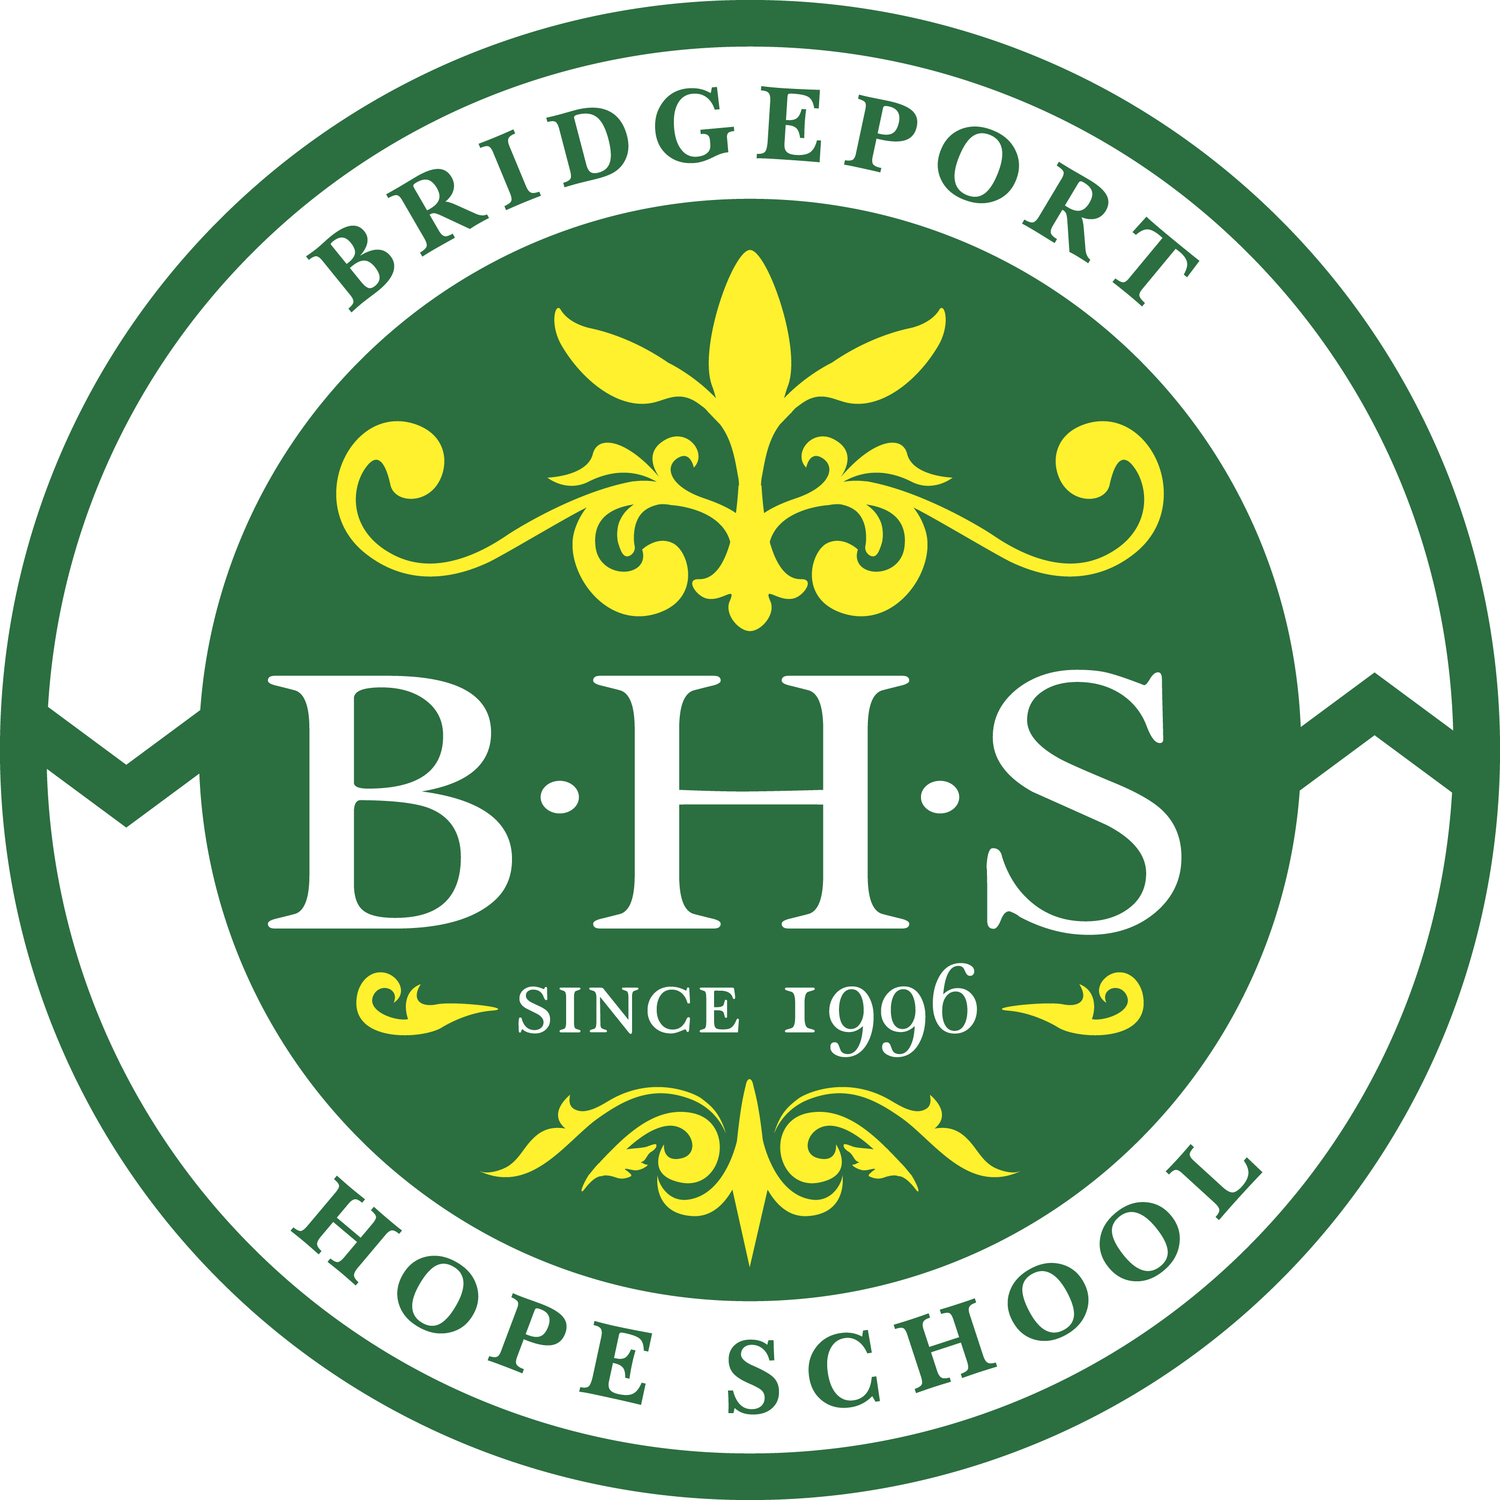 Bridgeport Hope School